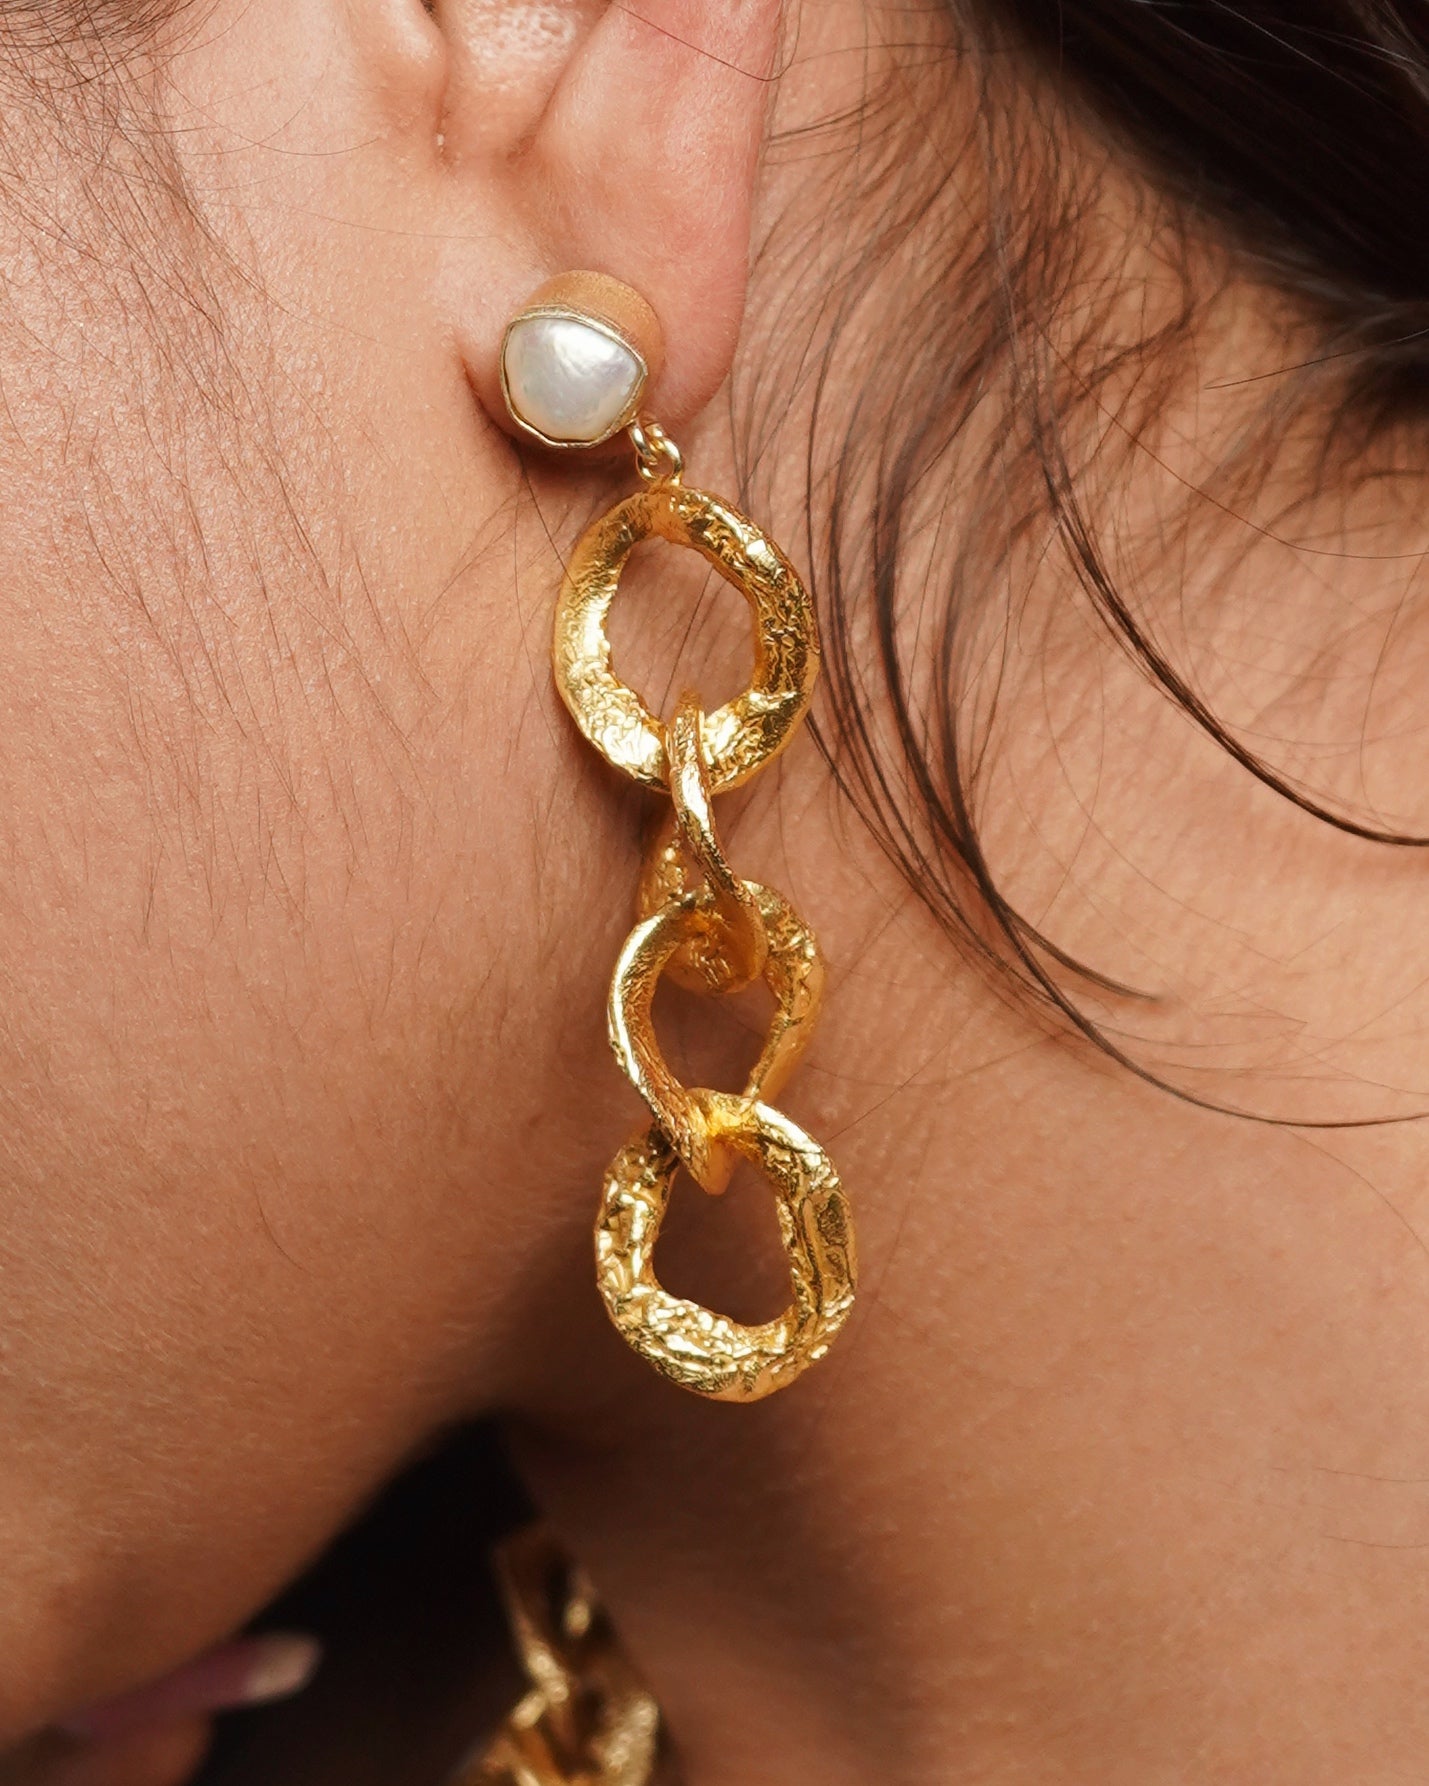 Rings of Love Earrings